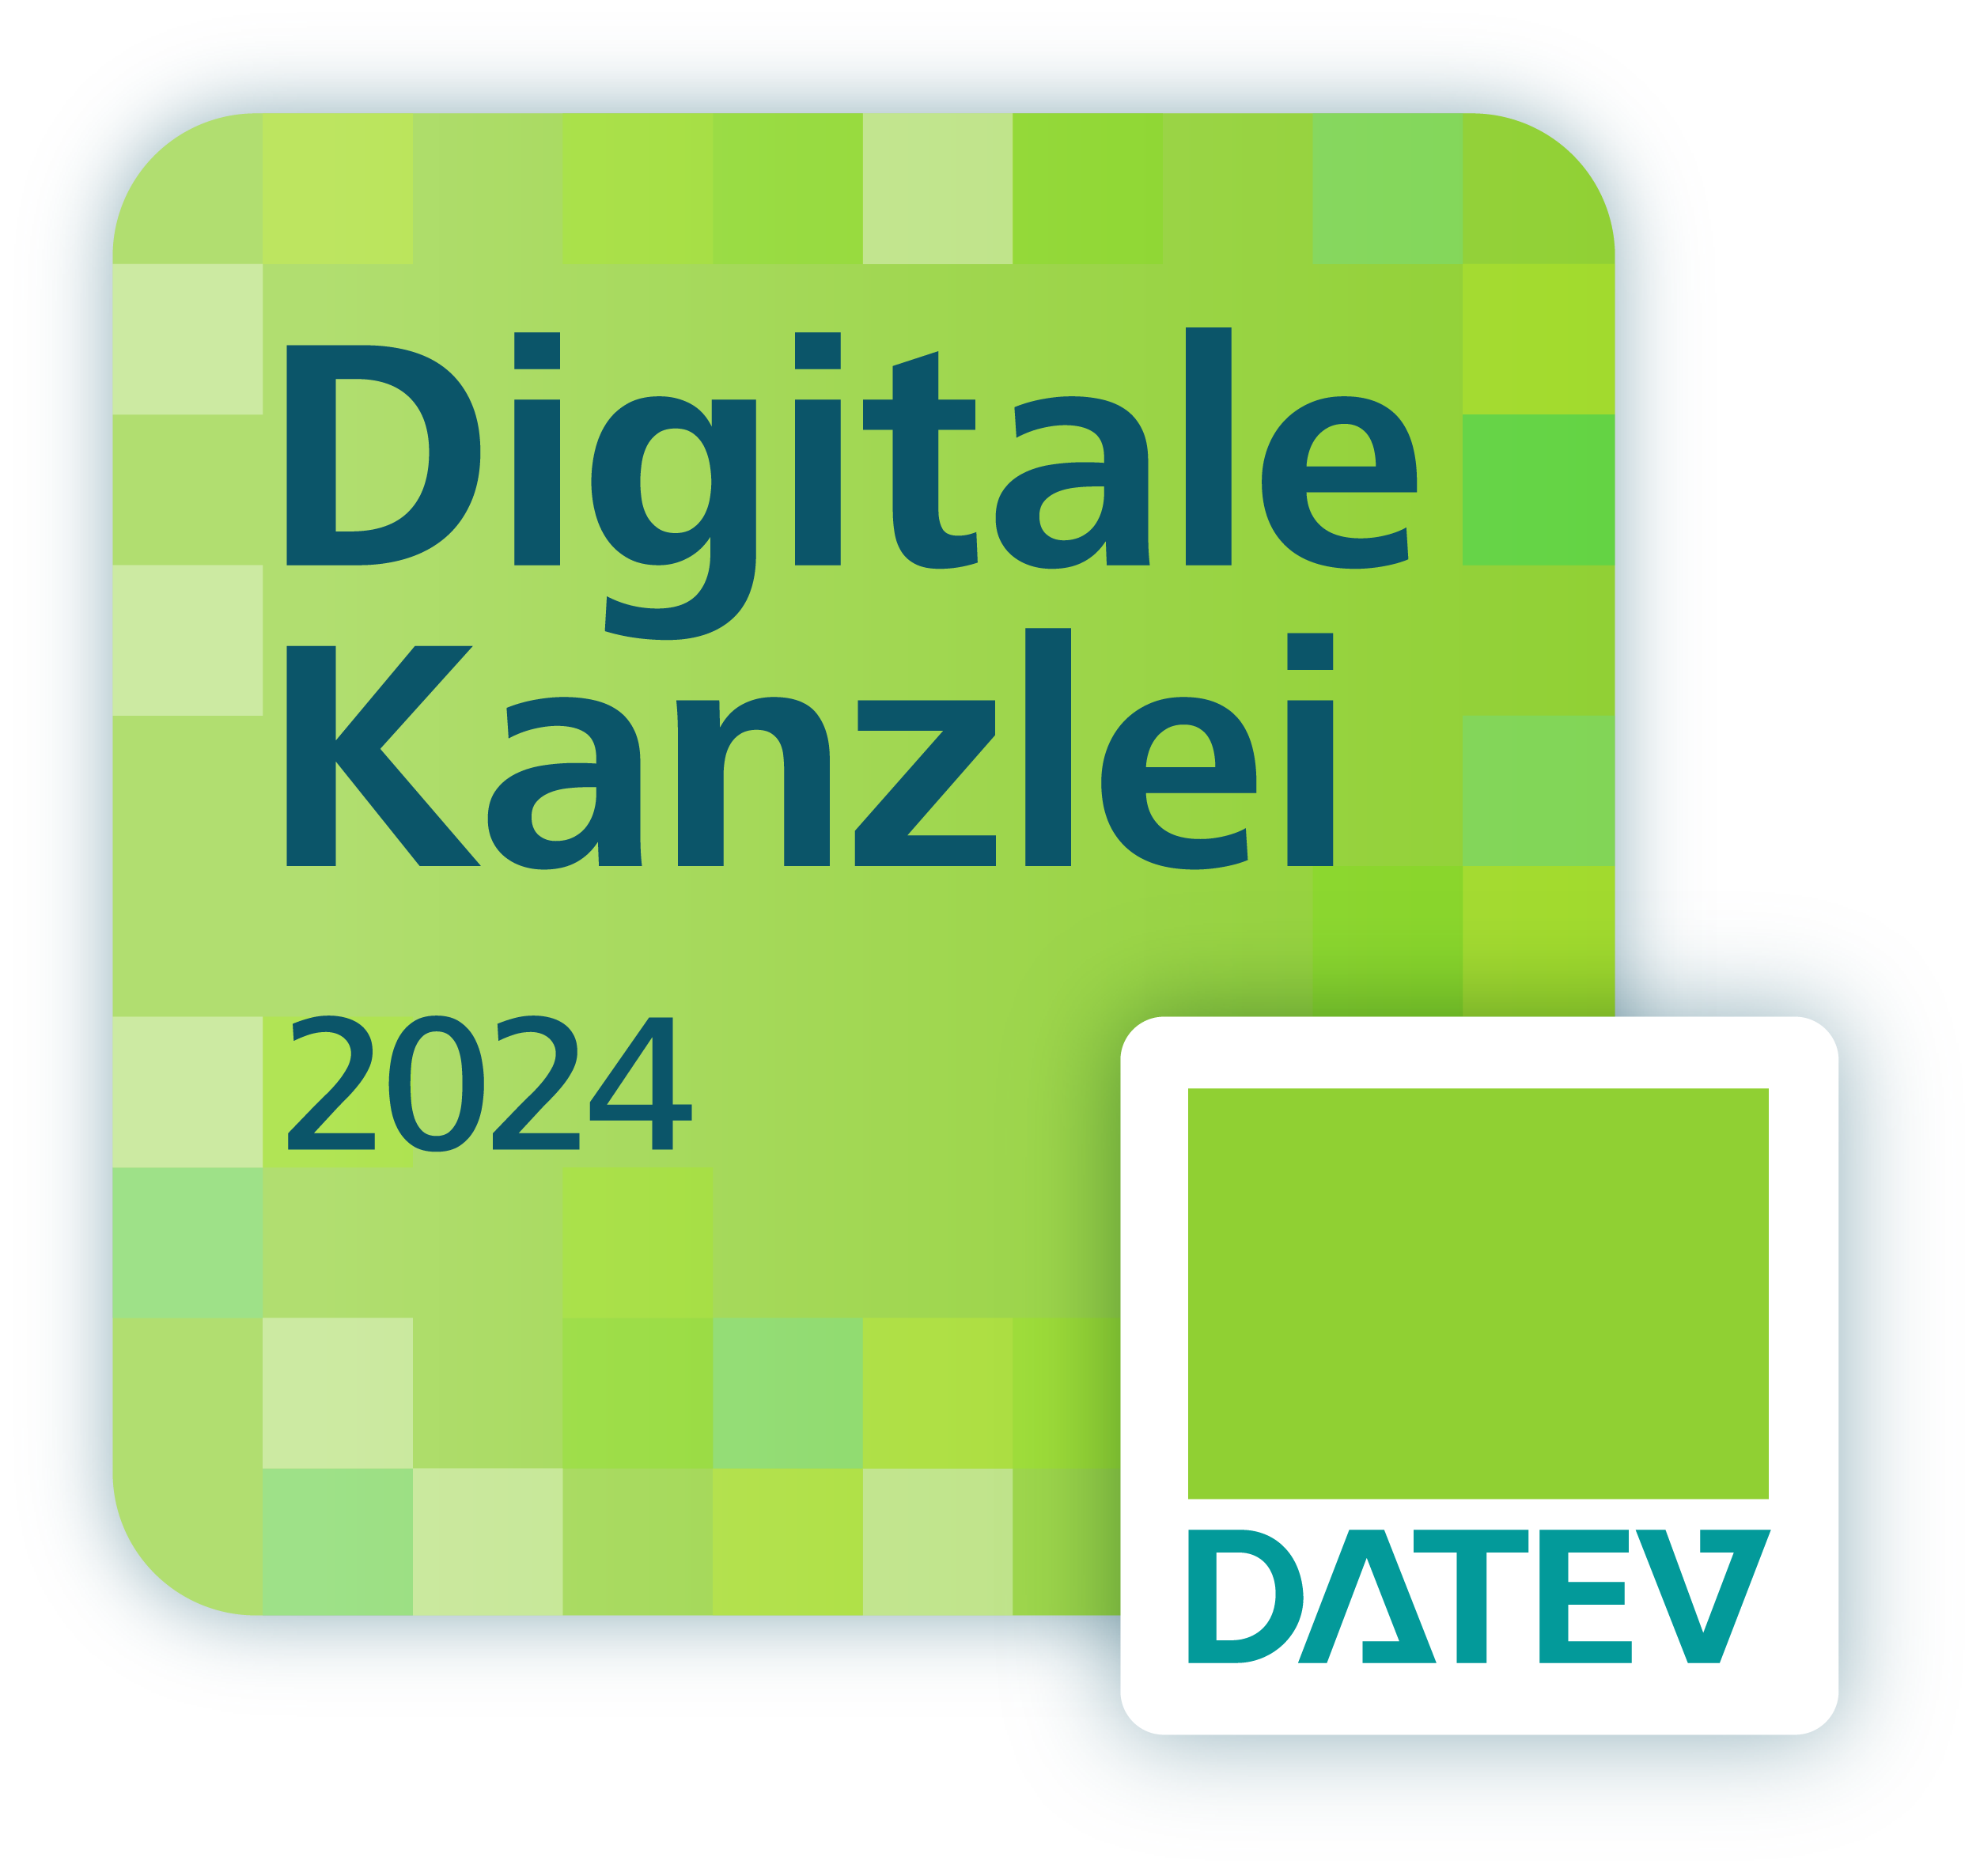 Digitale Kanzlei 2024 DATEV